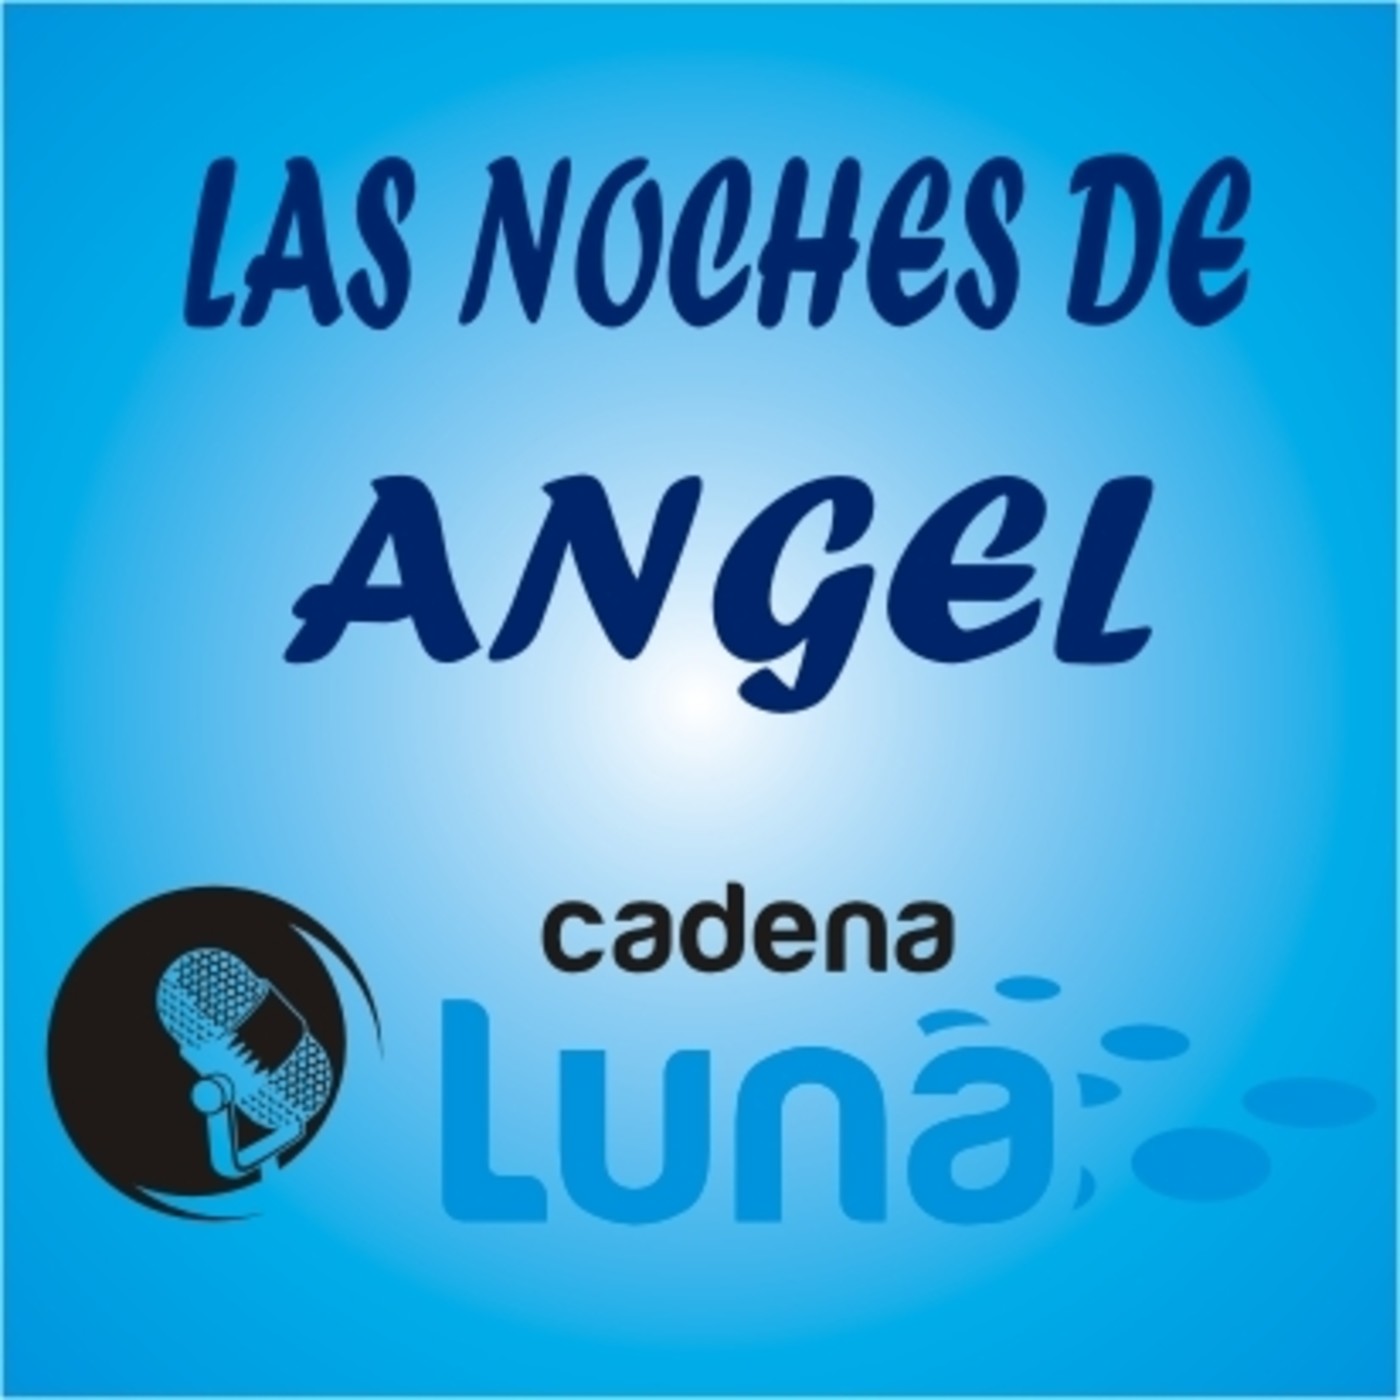 Las noches de Angel cadena luna - 09 - 06 - 22